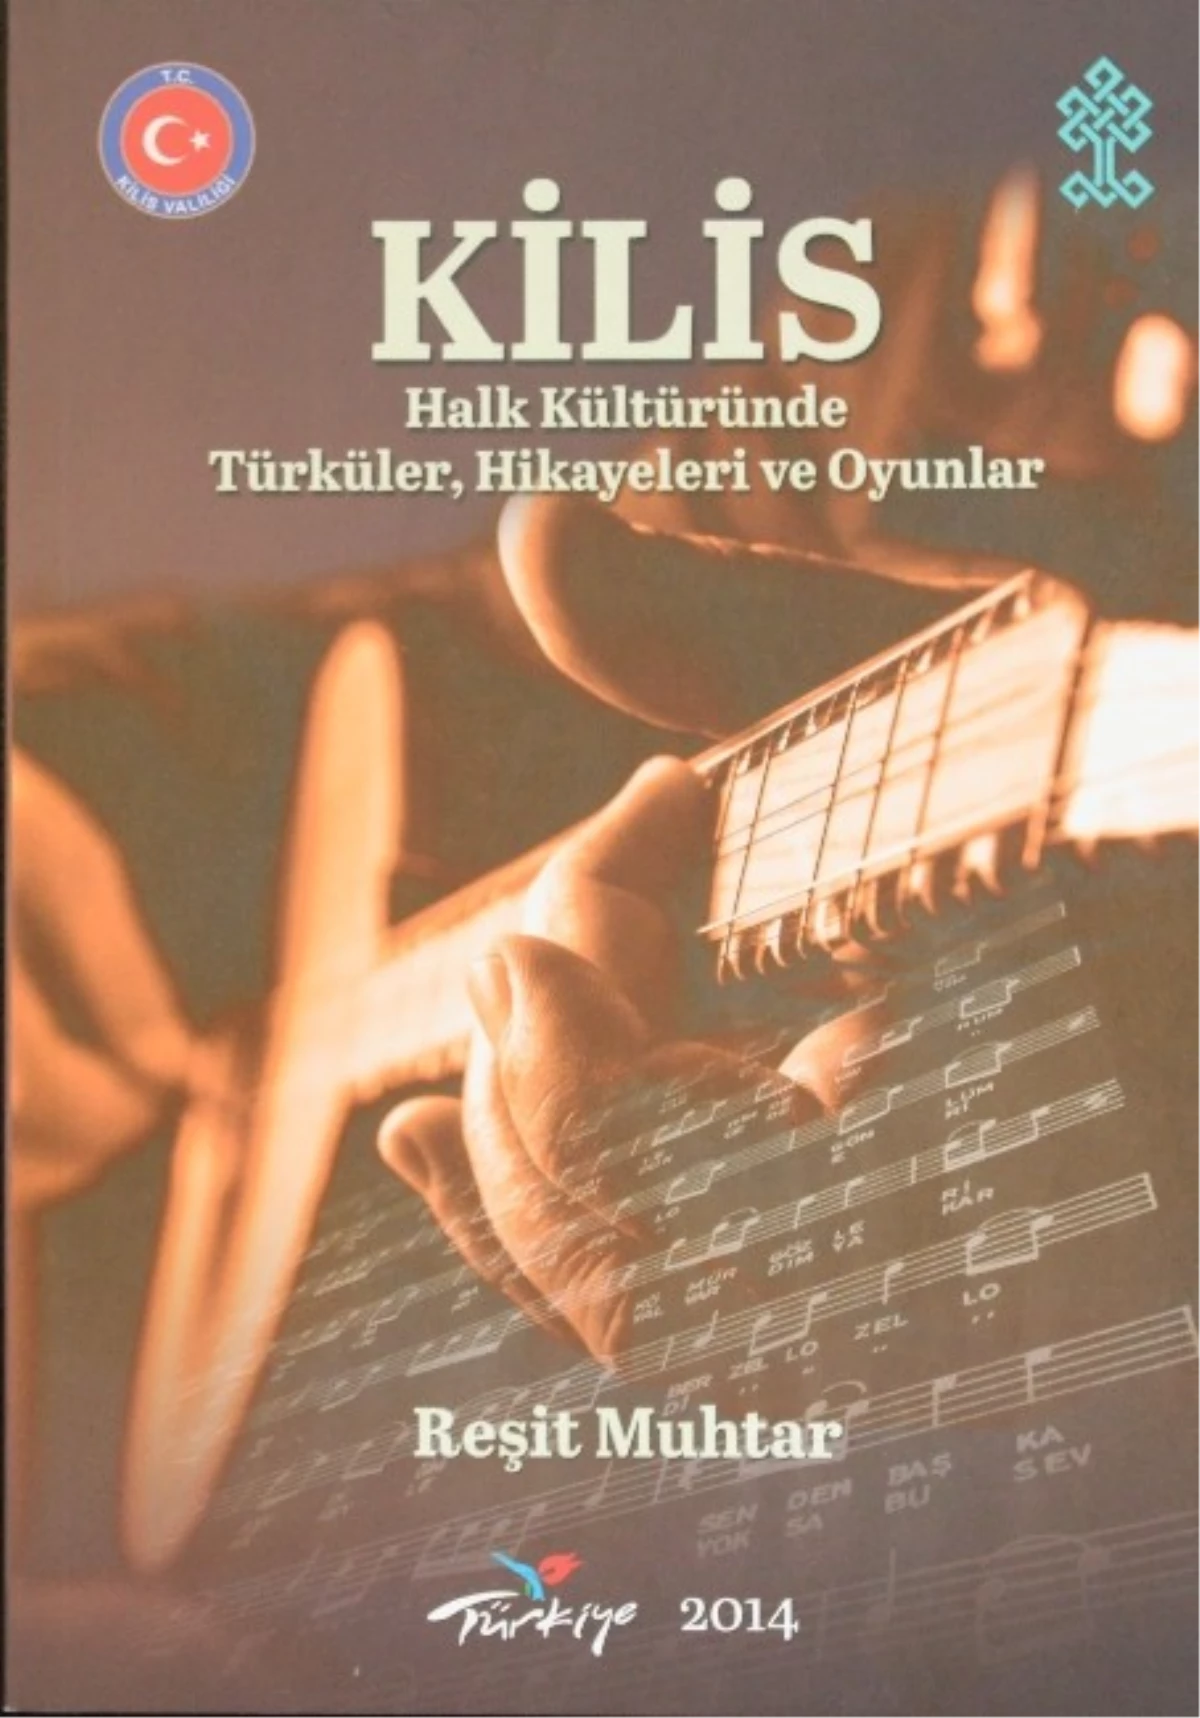 Kilis Türküleri Kitaplaştırıldı